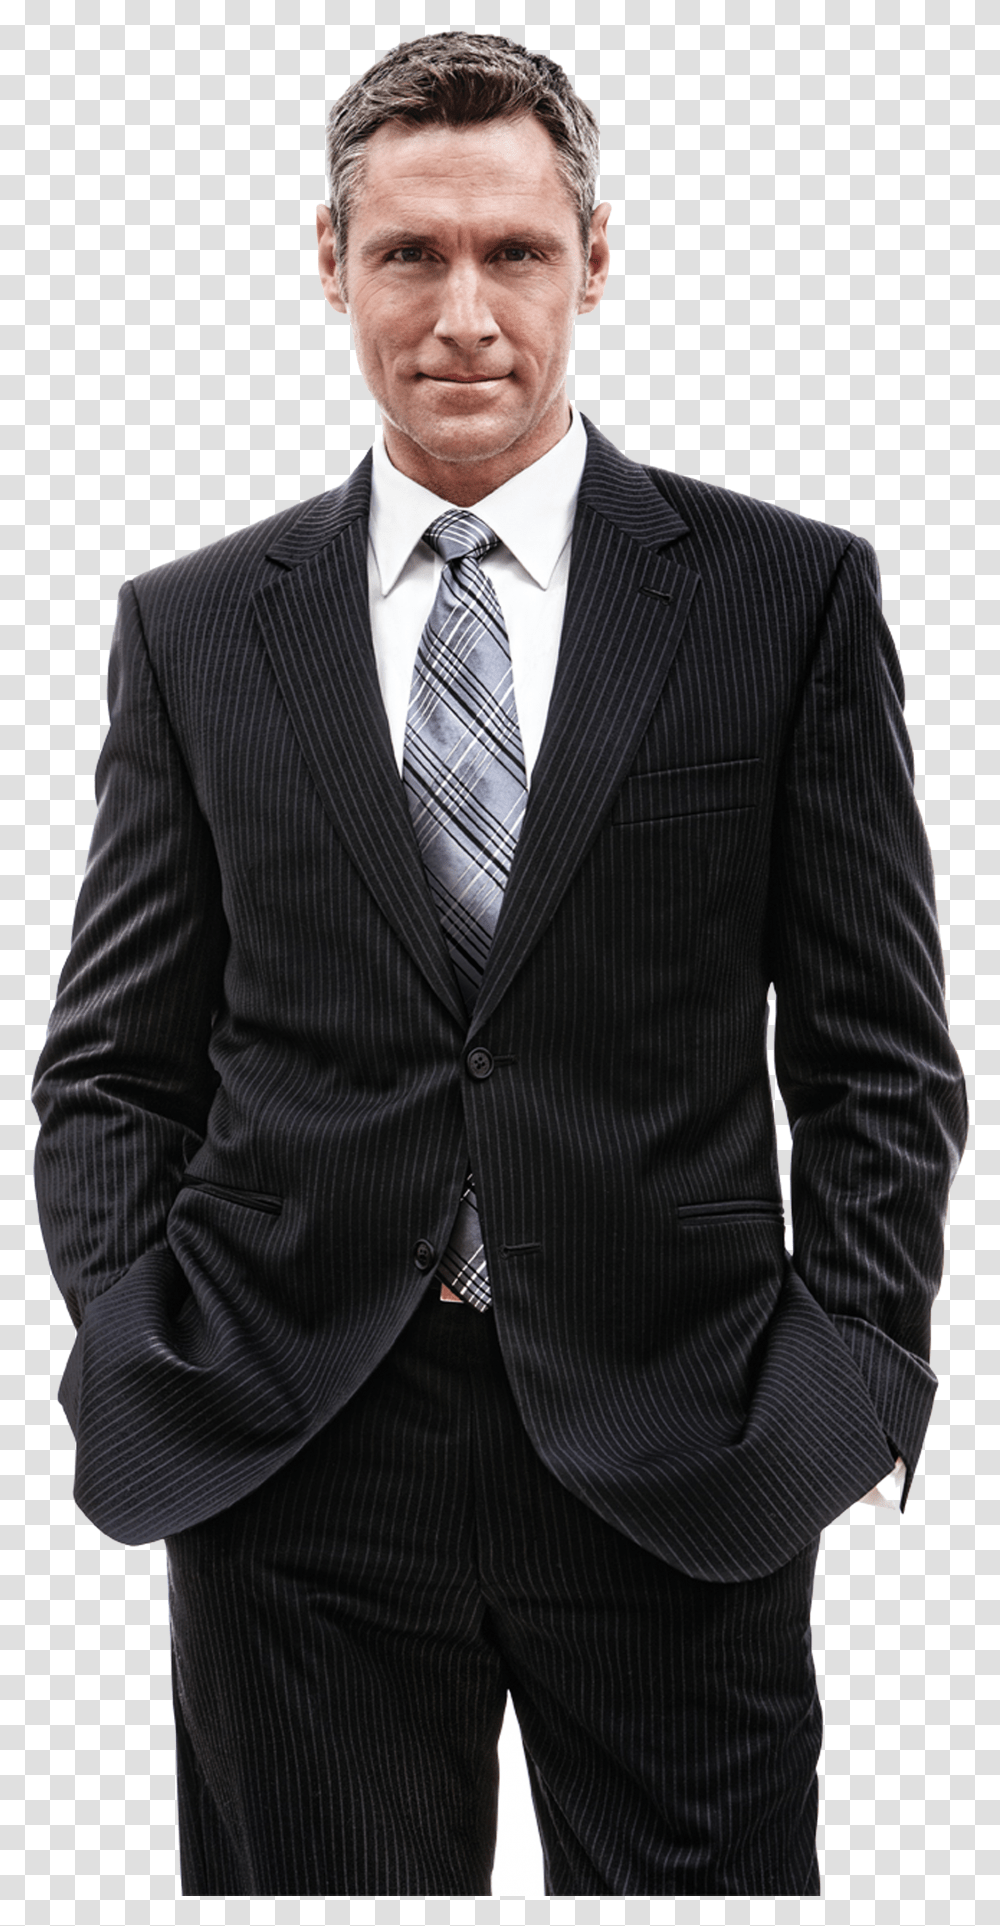 Businessman, Person, Apparel, Suit Transparent Png